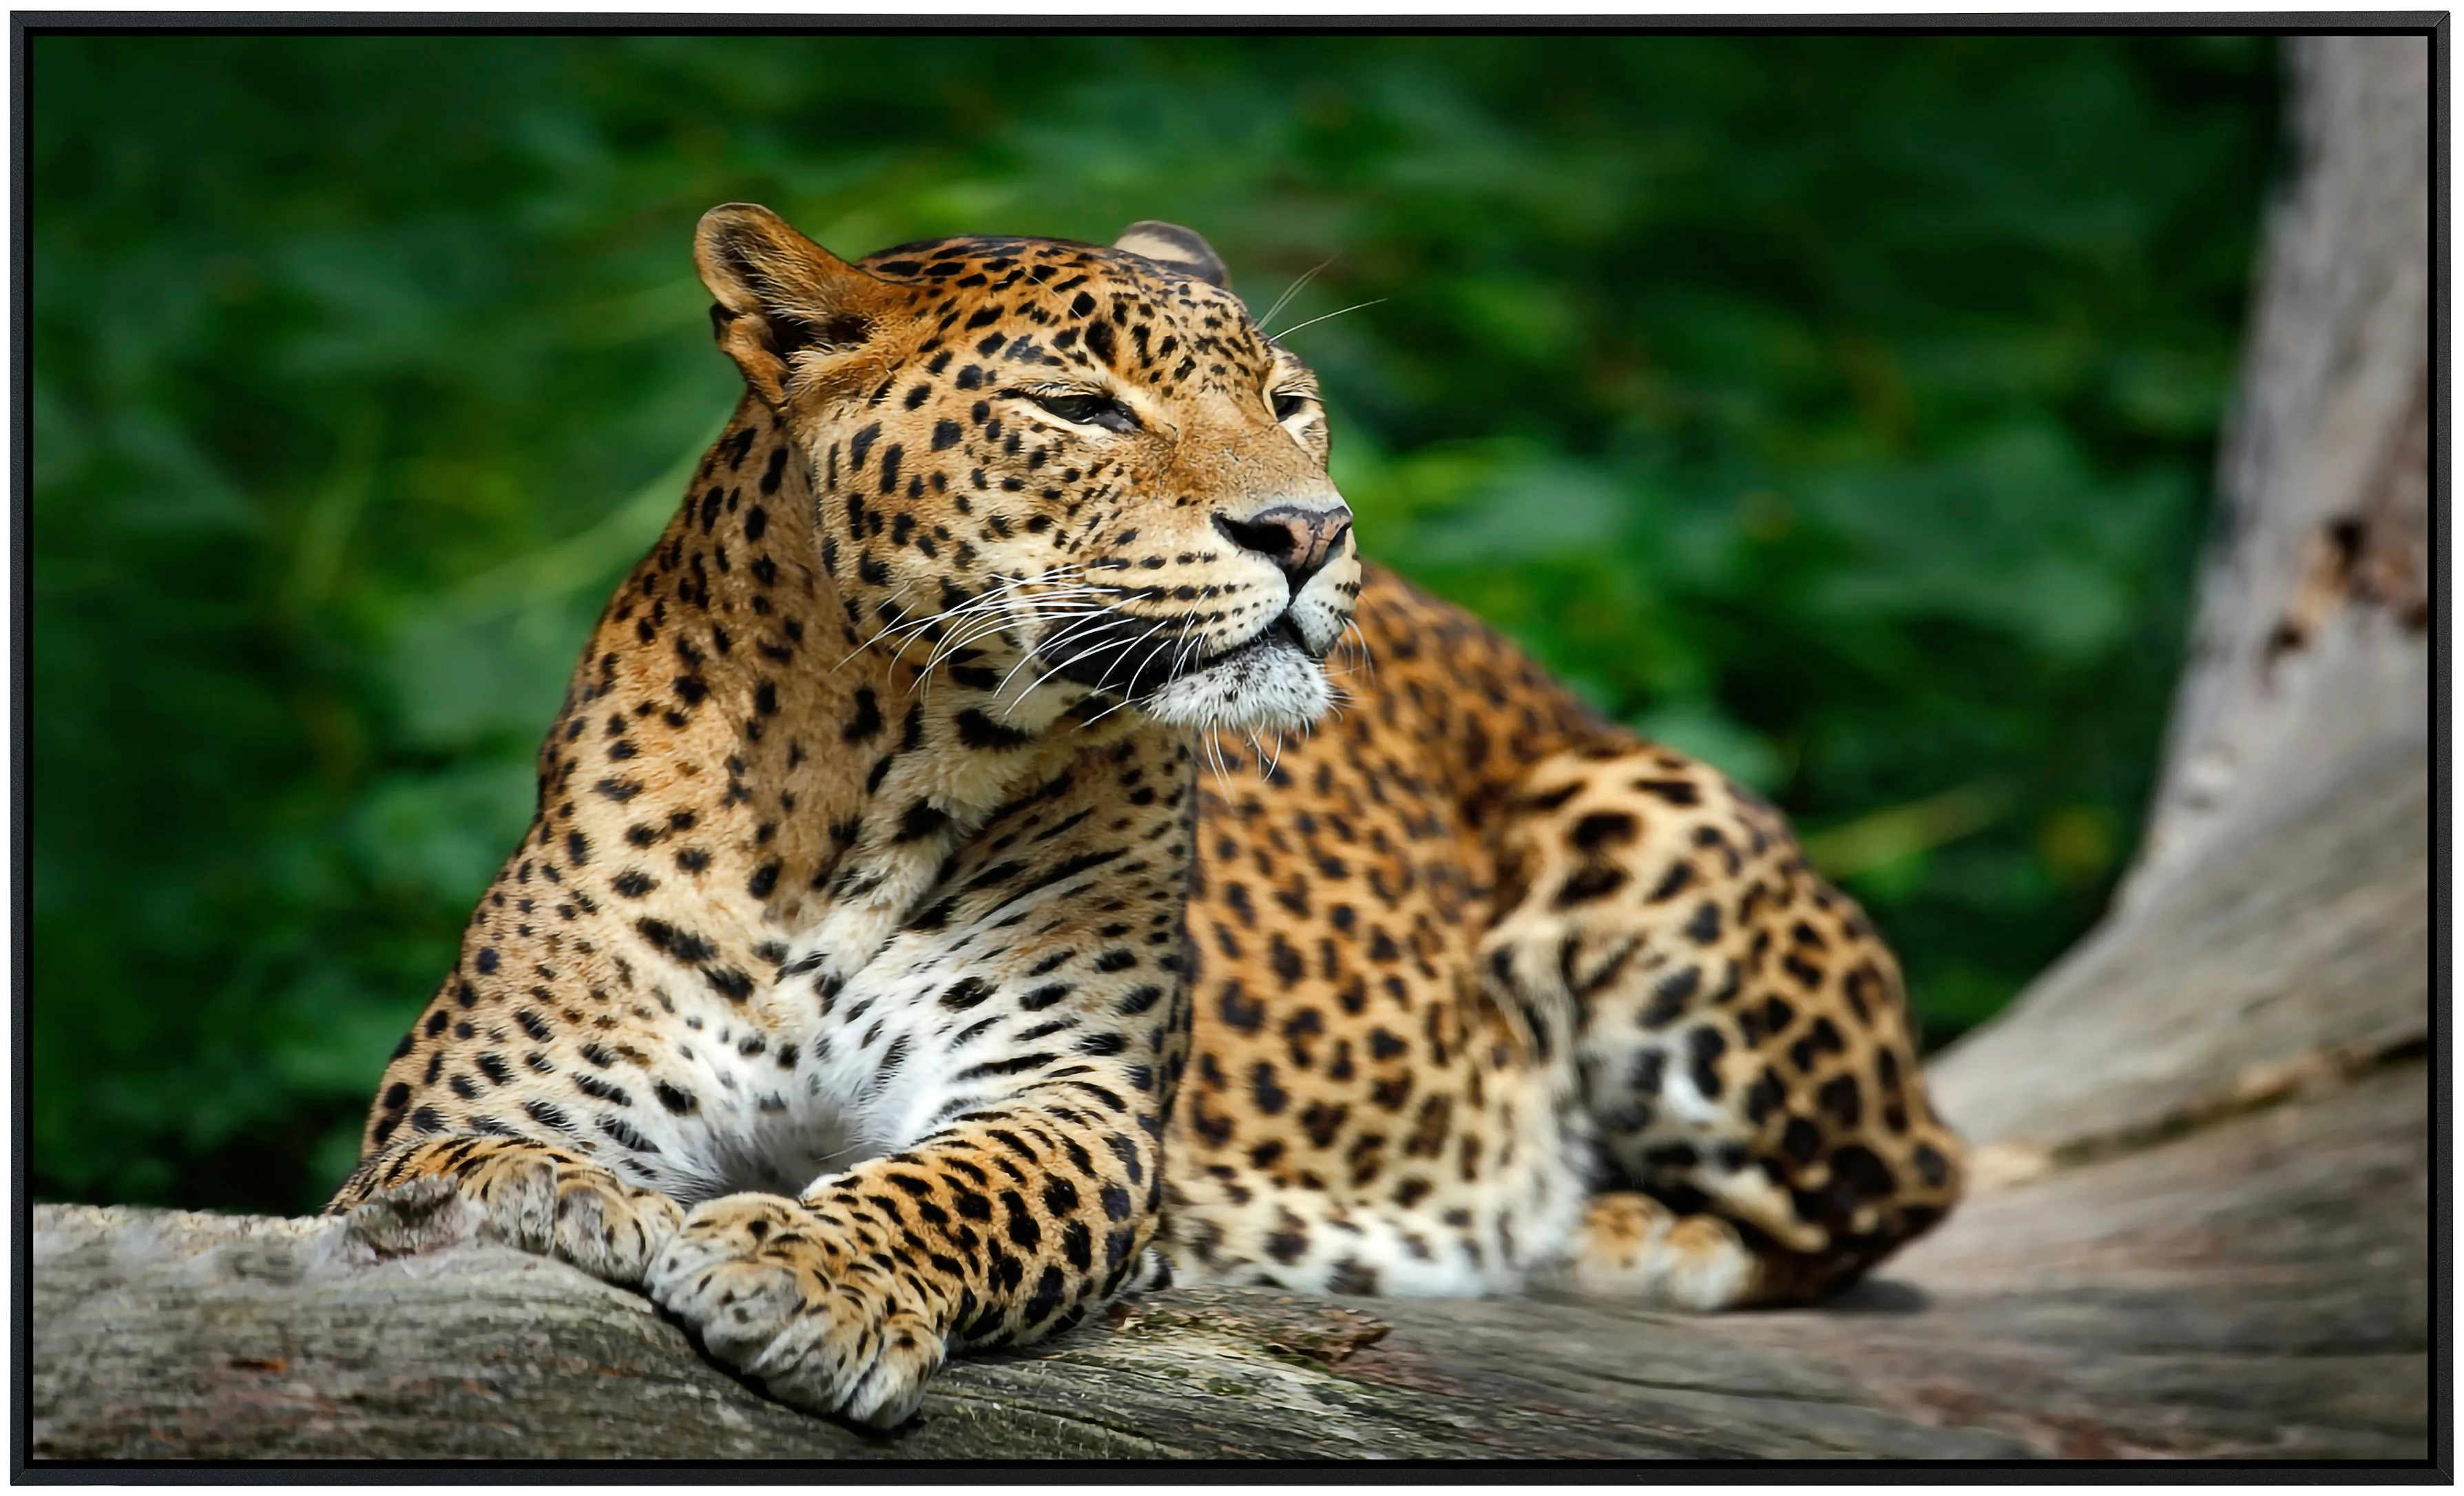 Papermoon Infrarotheizung »Leopard«, sehr angenehme Strahlungswärme günstig online kaufen